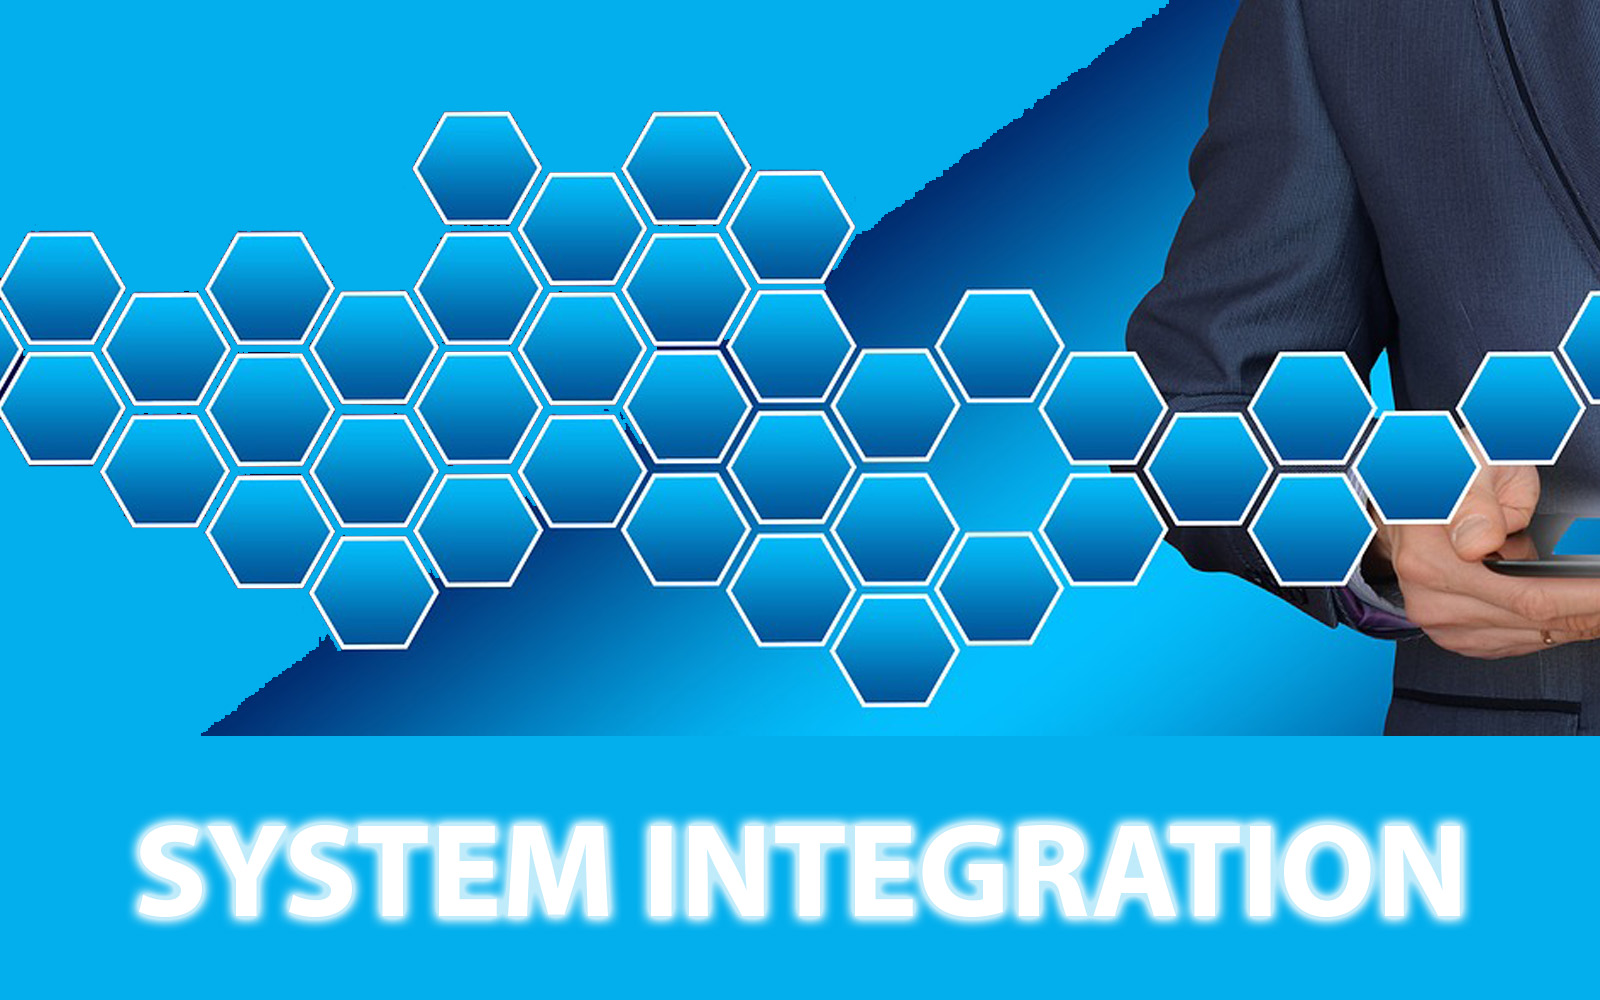 System integration